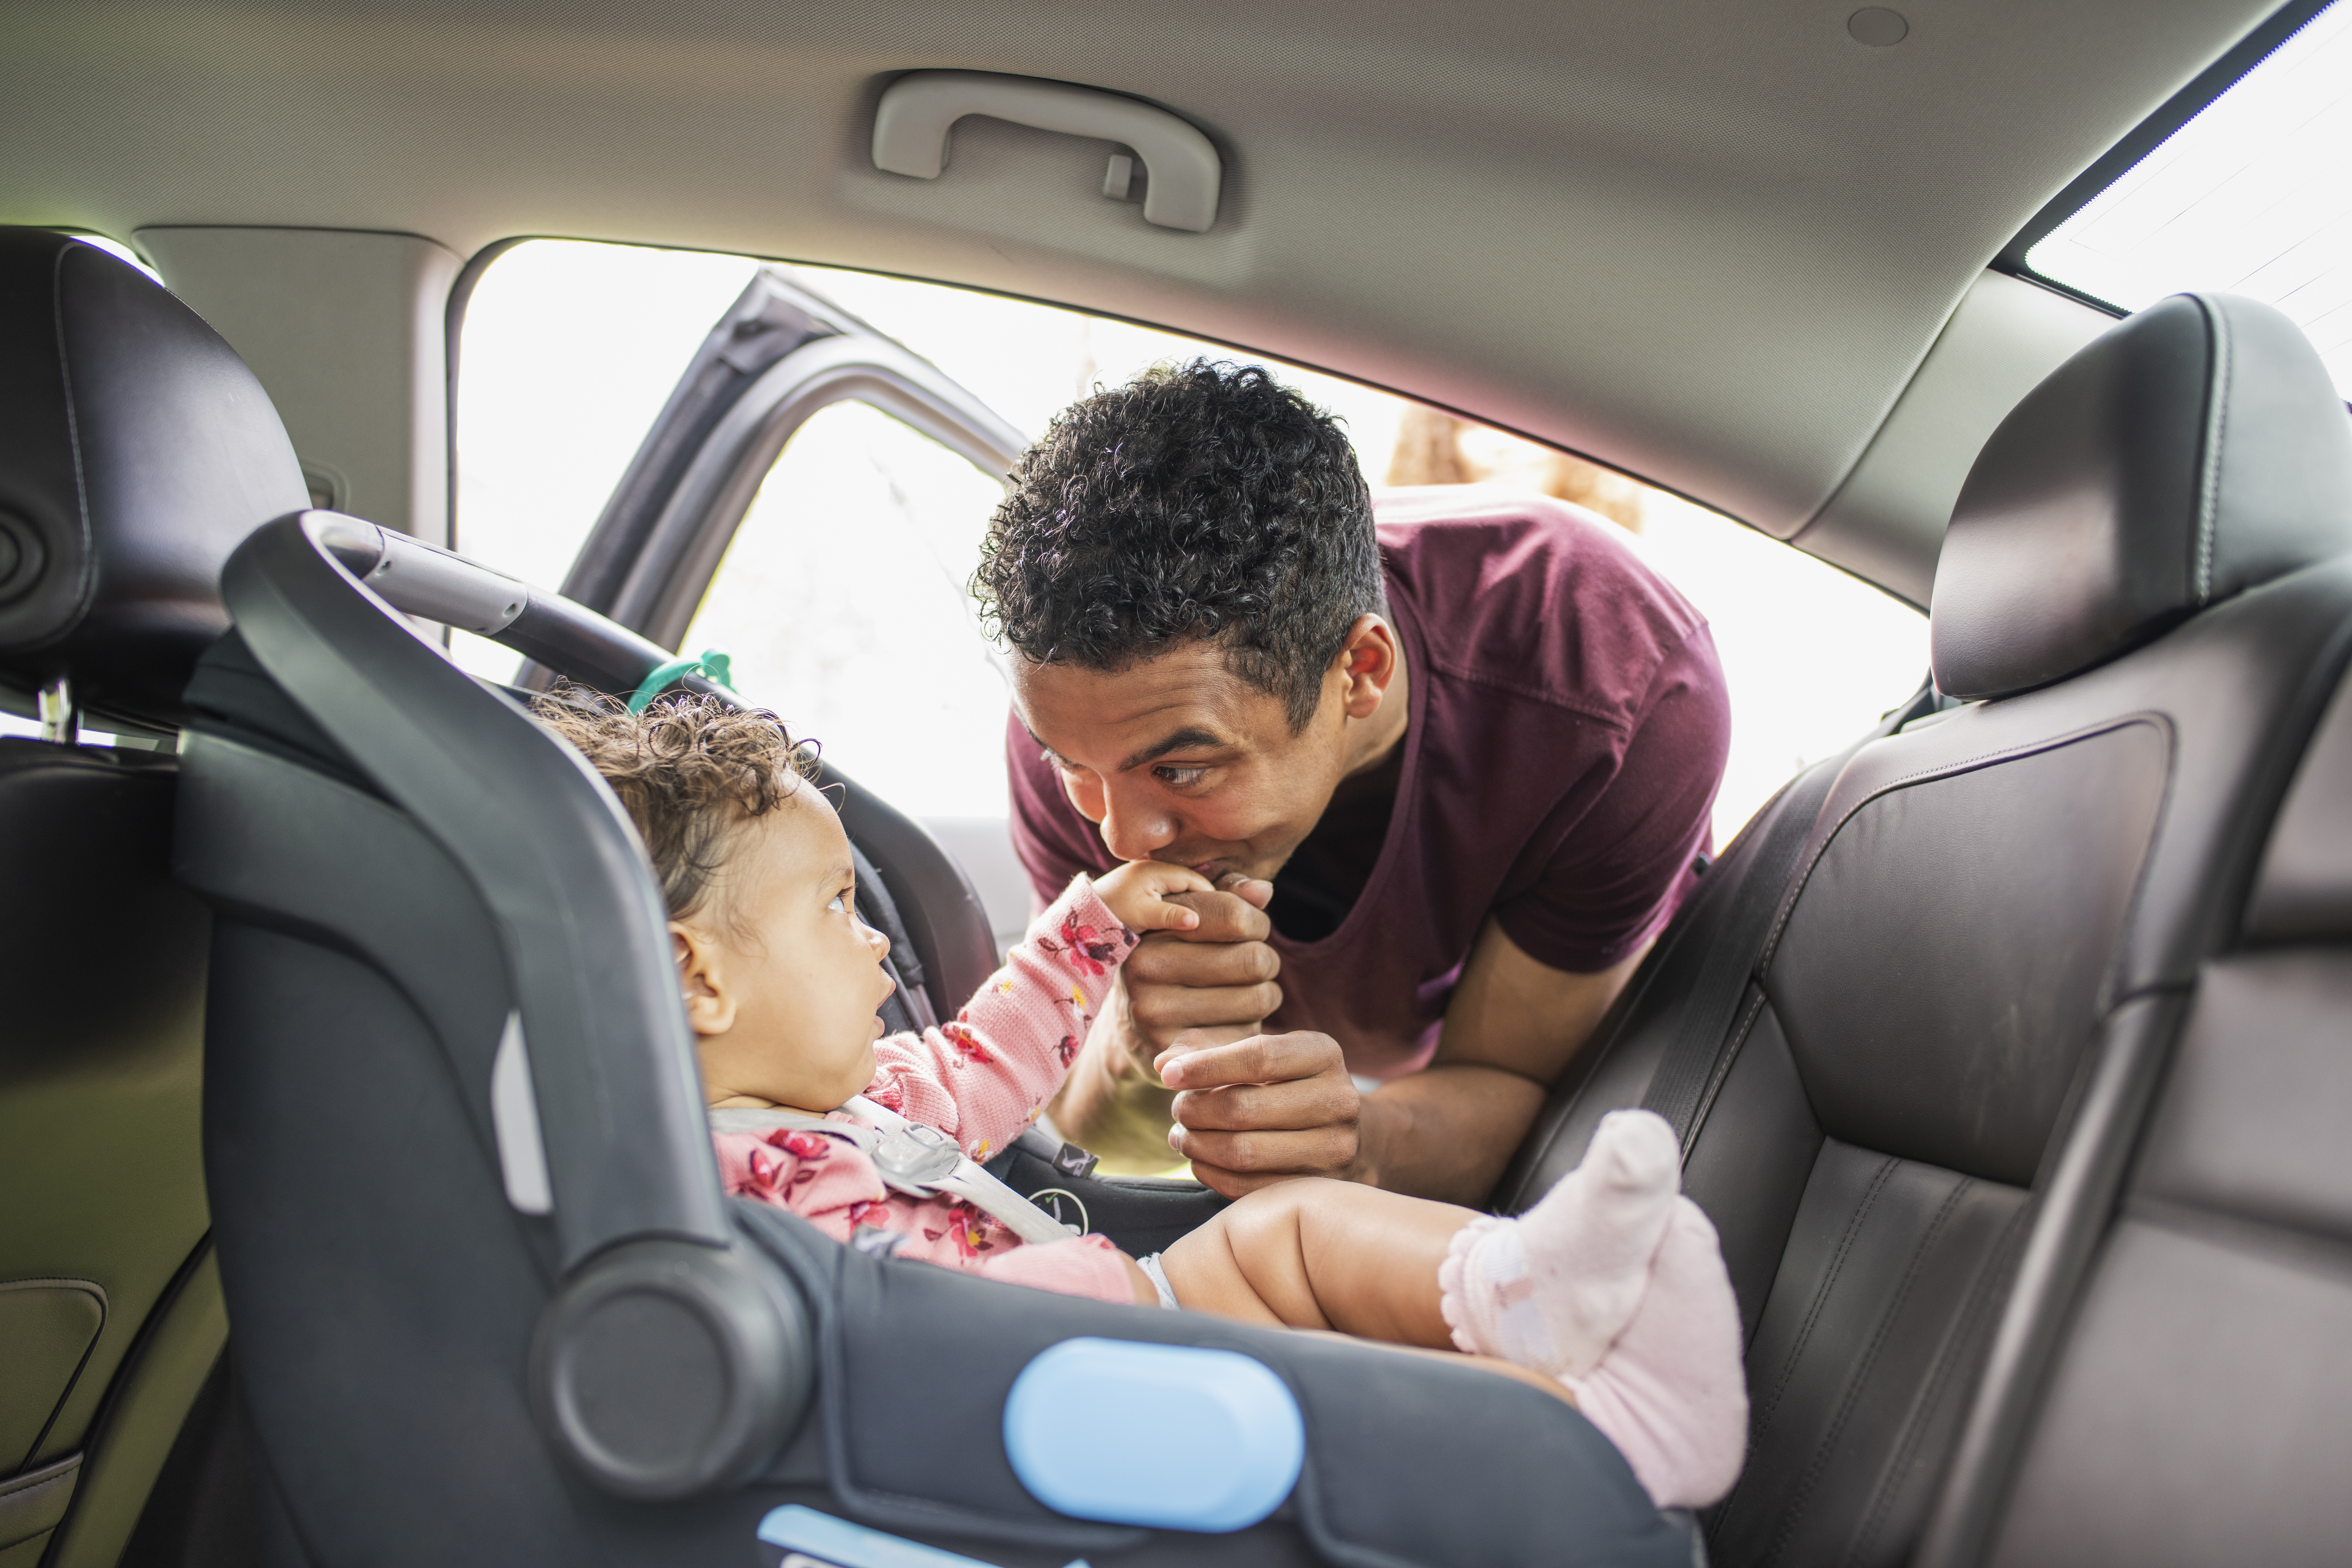 Padre joven poniendo a la niña en el asiento del coche.